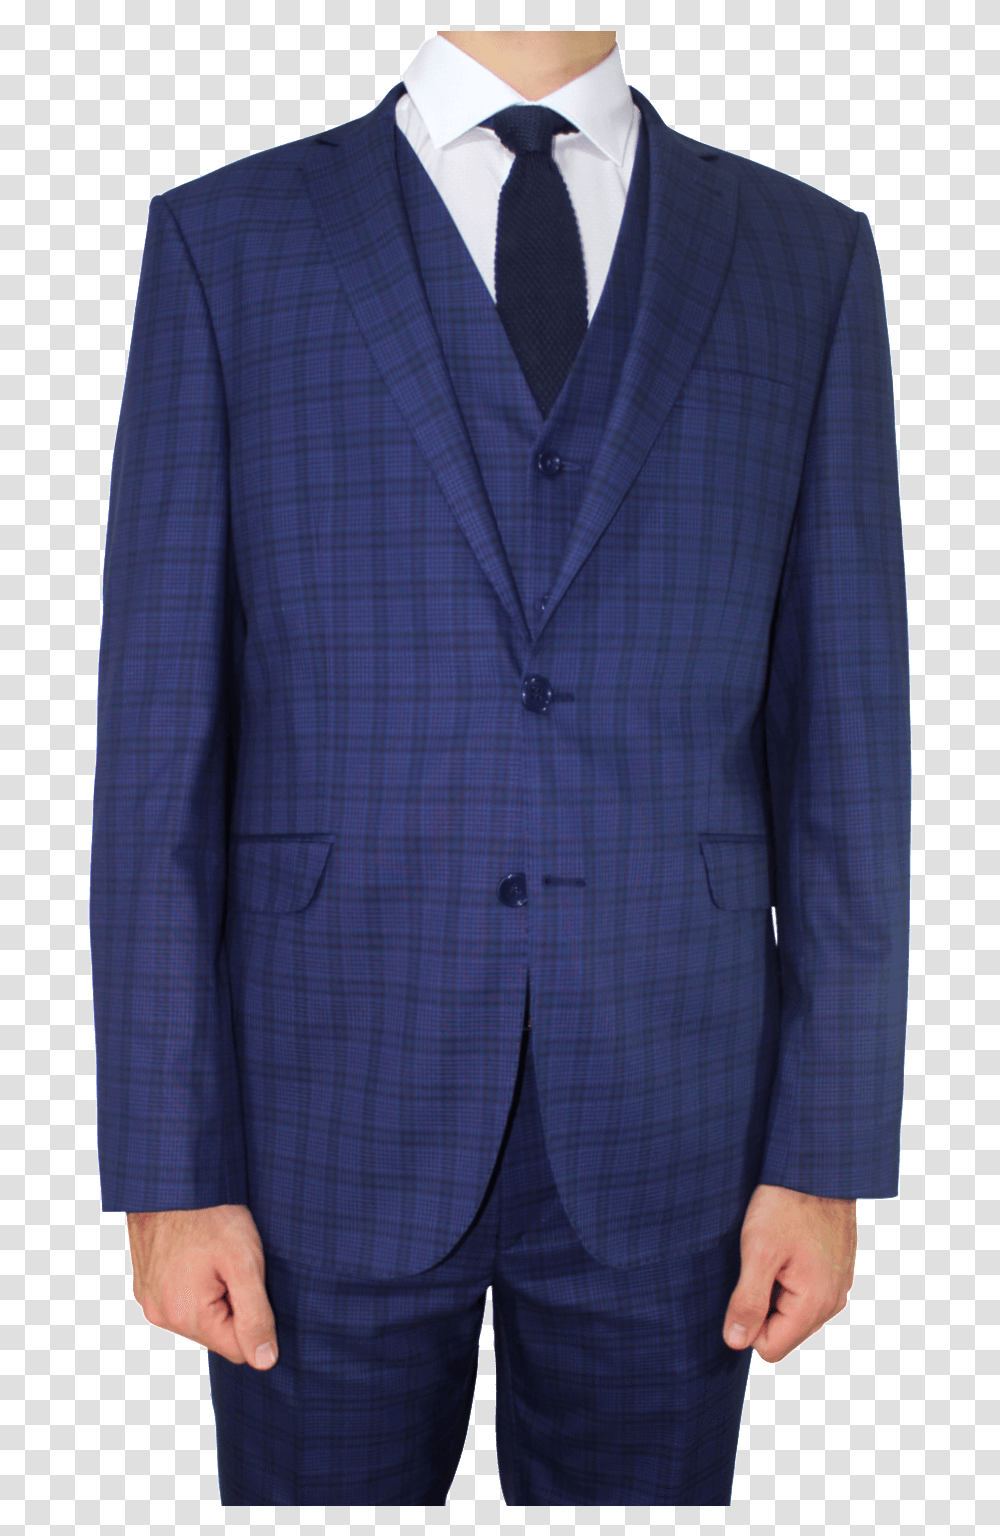 Blue Suit Download Image Check 3 Piece Suit Blue, Overcoat, Tie, Accessories Transparent Png